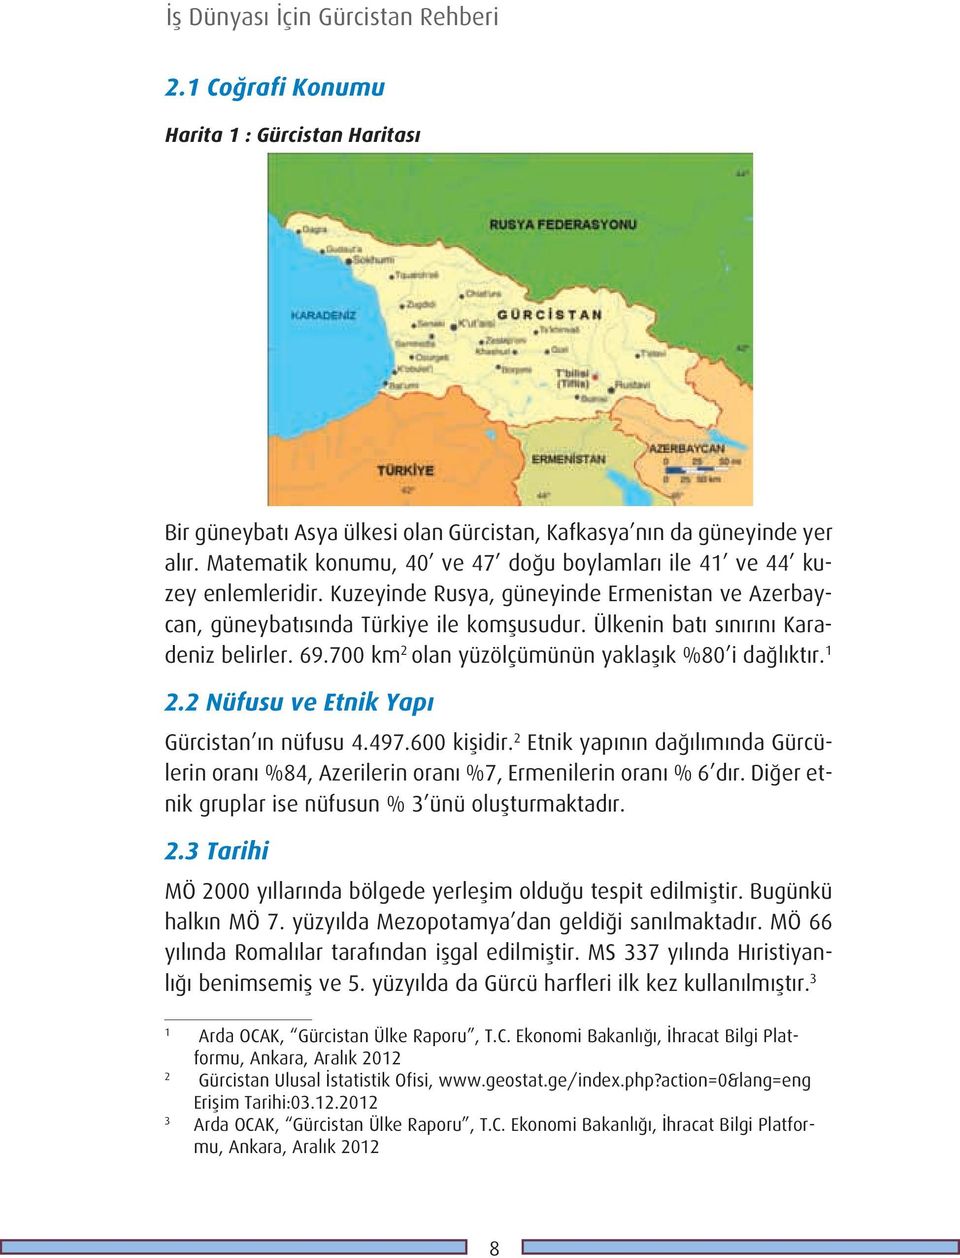 ülkenin batı sınırını Karadeniz belirler. 69.700 km 2 olan yüzölçümünün yaklaşık %80 i dağlıktır. 1 2.2 Nüfusu ve Etnik Yapı Gürcistan ın nüfusu 4.497.600 kişidir.